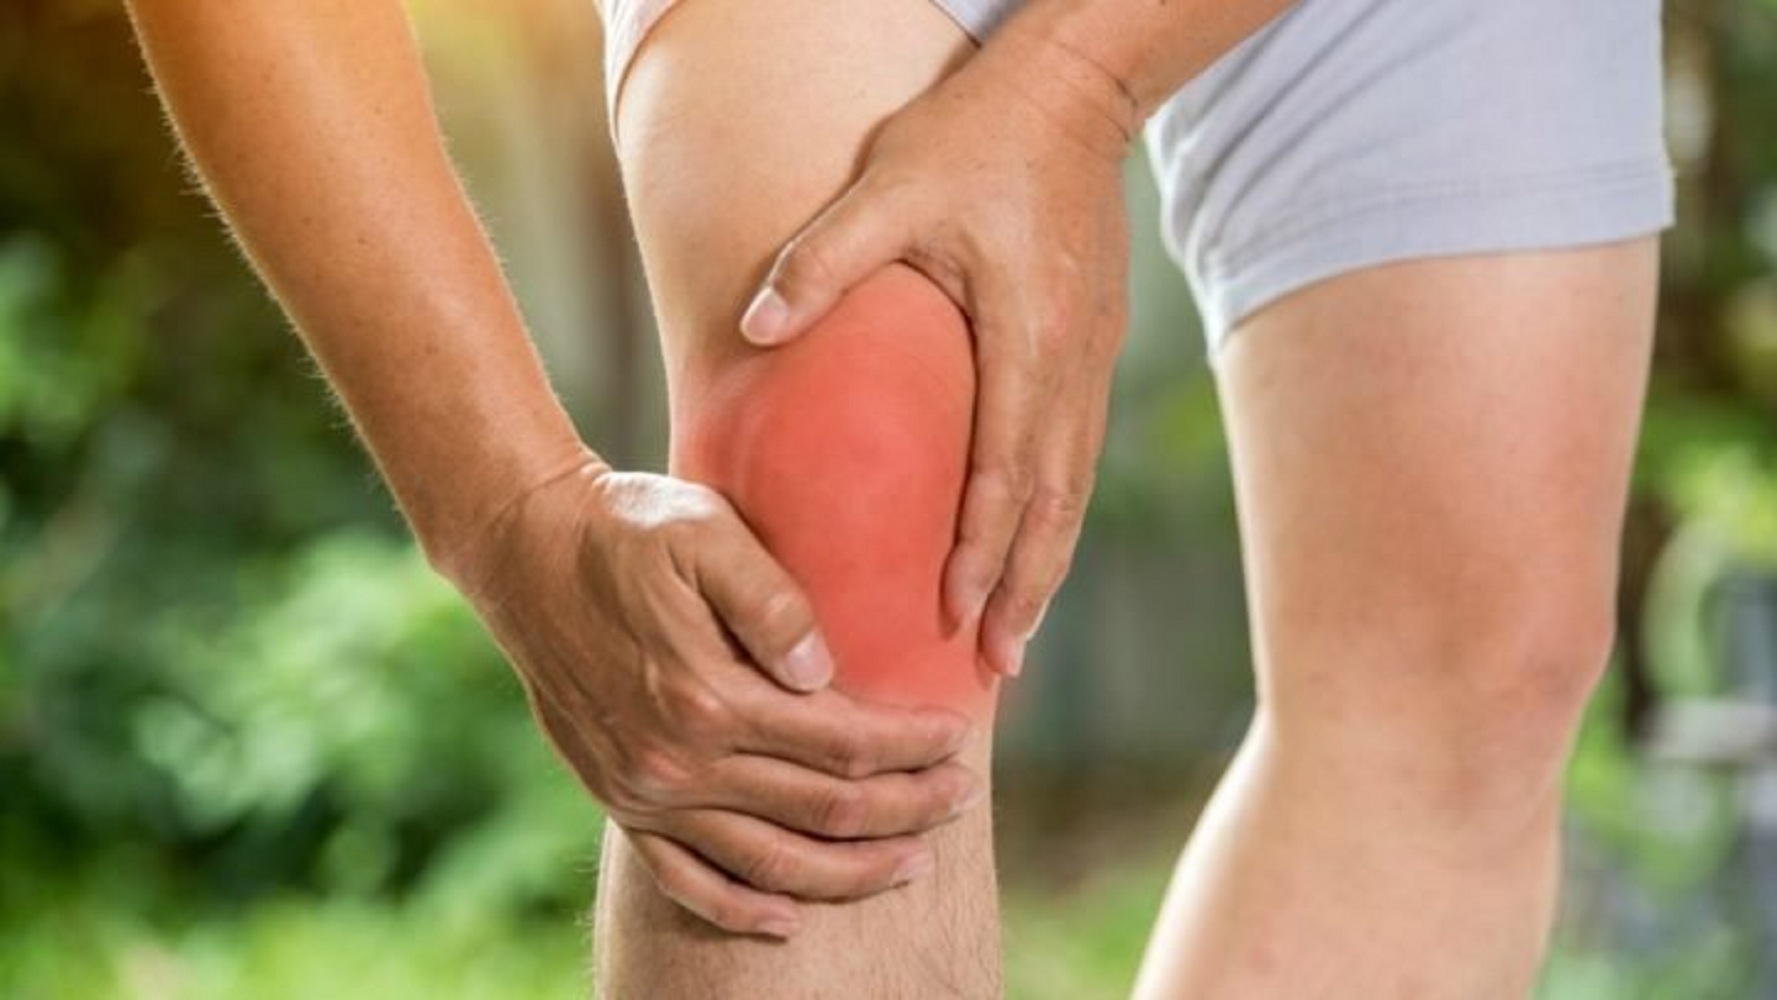 articulațiile cotului doare în timpul exercițiului fizic ce poate provoca durere în articulațiile degetelor